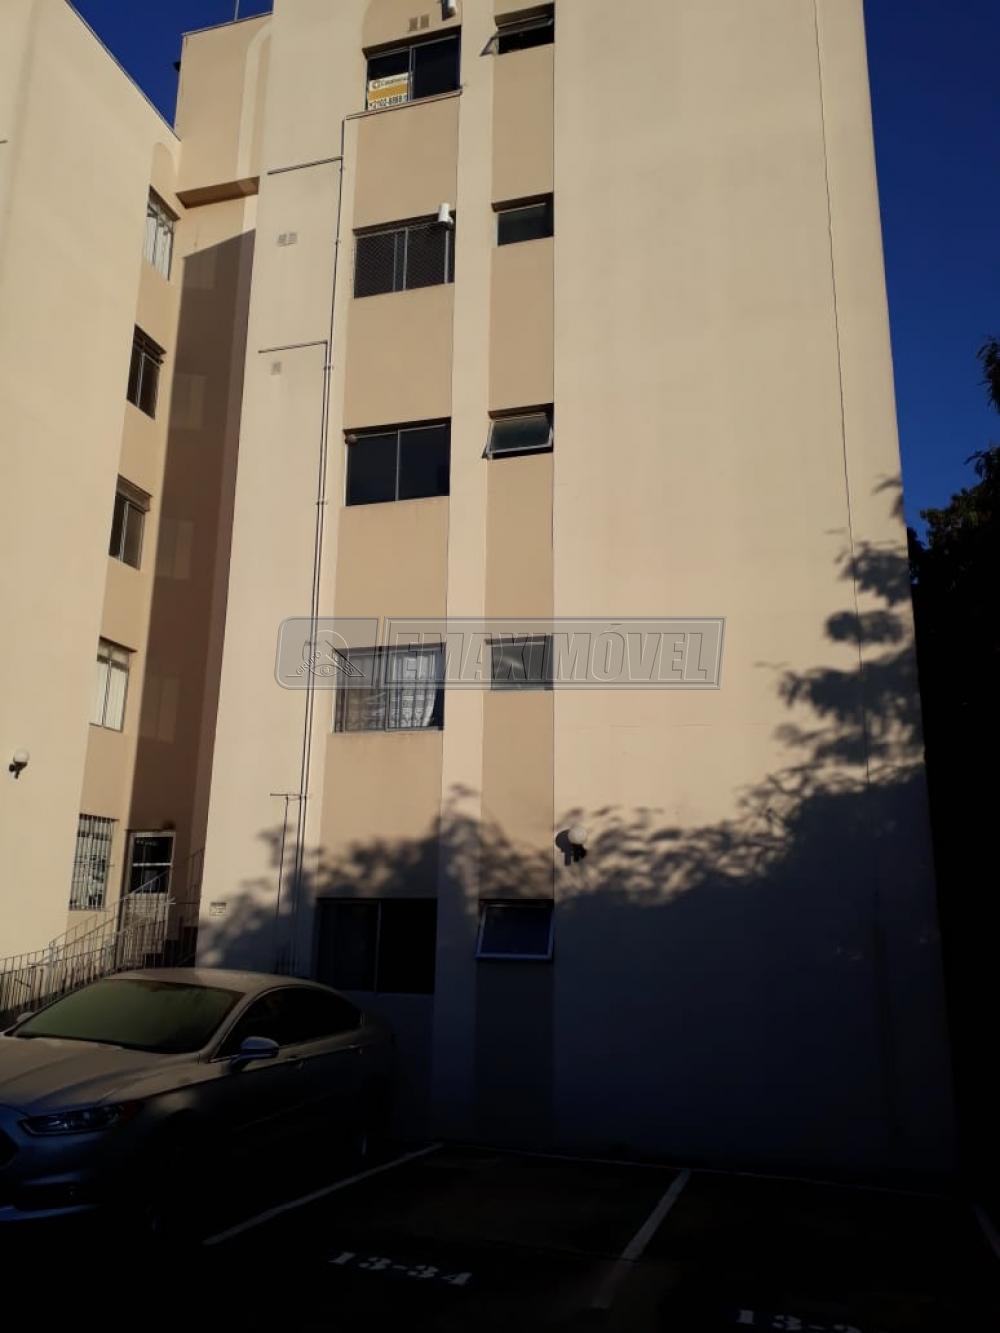 Comprar Apartamento / Padrão em Sorocaba R$ 160.000,00 - Foto 1